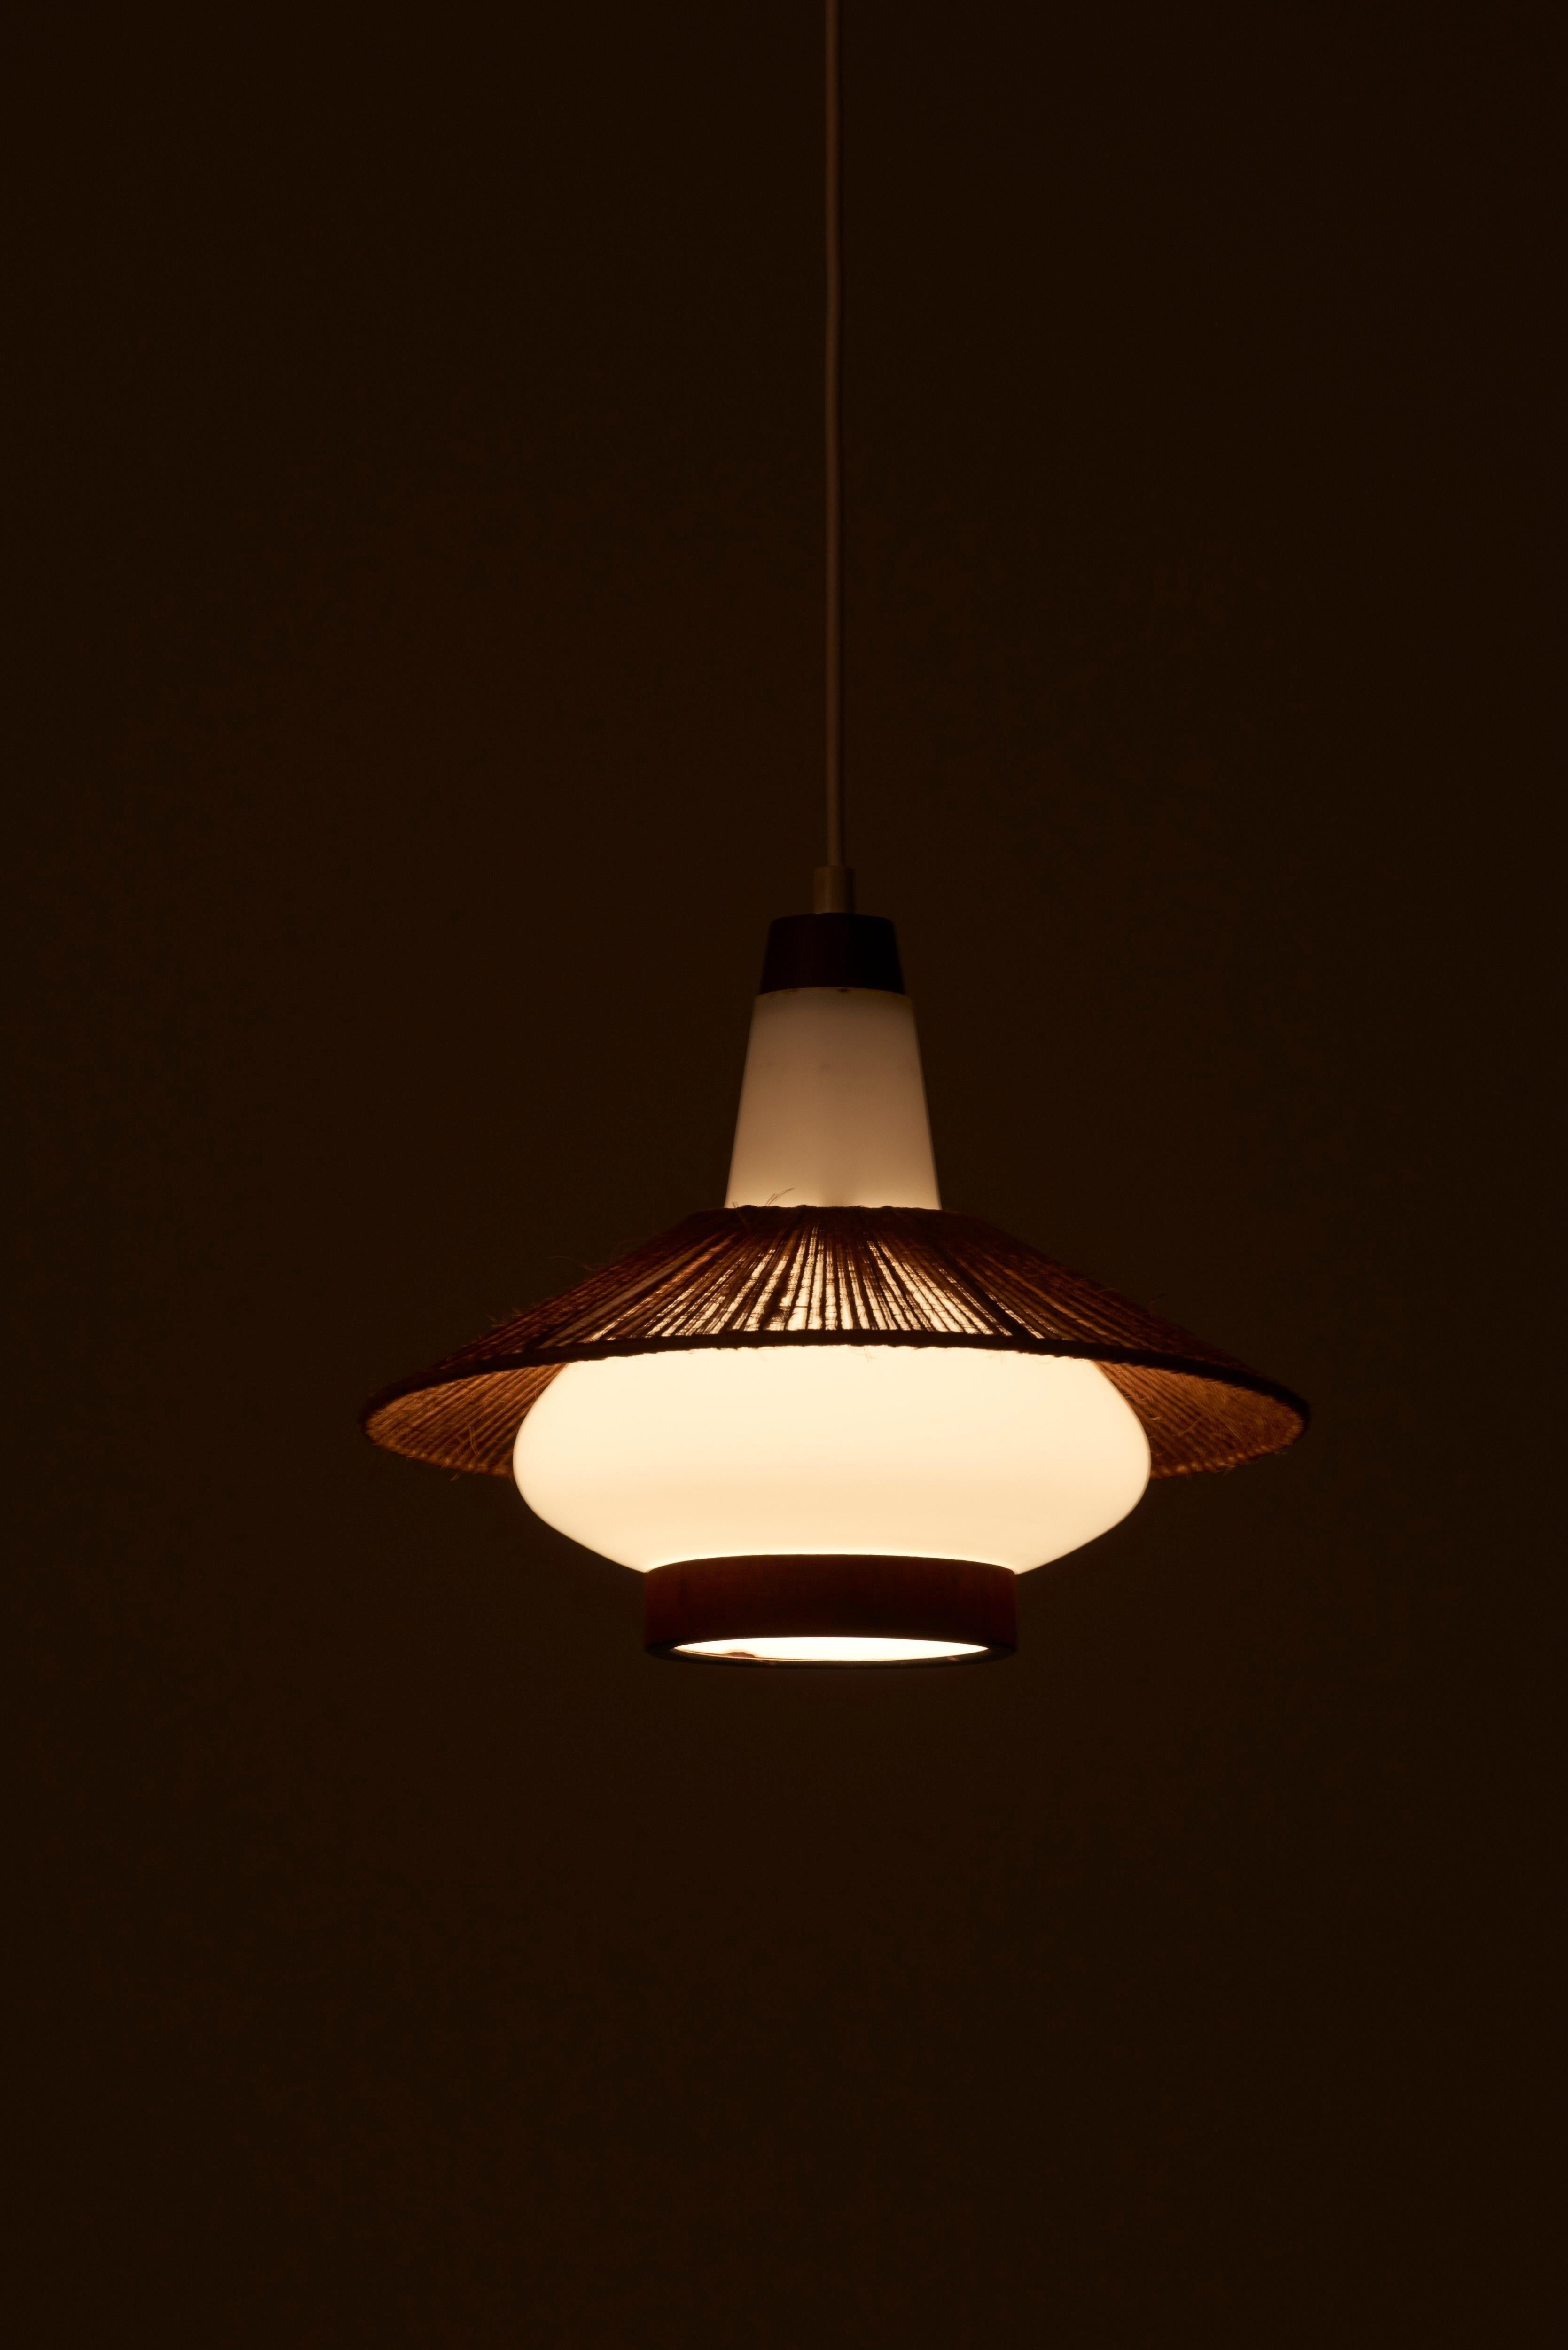 Lampe suspendue ronde avec abat-jour en cordon fabriquée par Corde Leuchten.
Nous avons également d'autres lampes Temde en stock.

1 x douille E27.

Remarque : la lampe doit être installée par un professionnel conformément aux exigences locales.